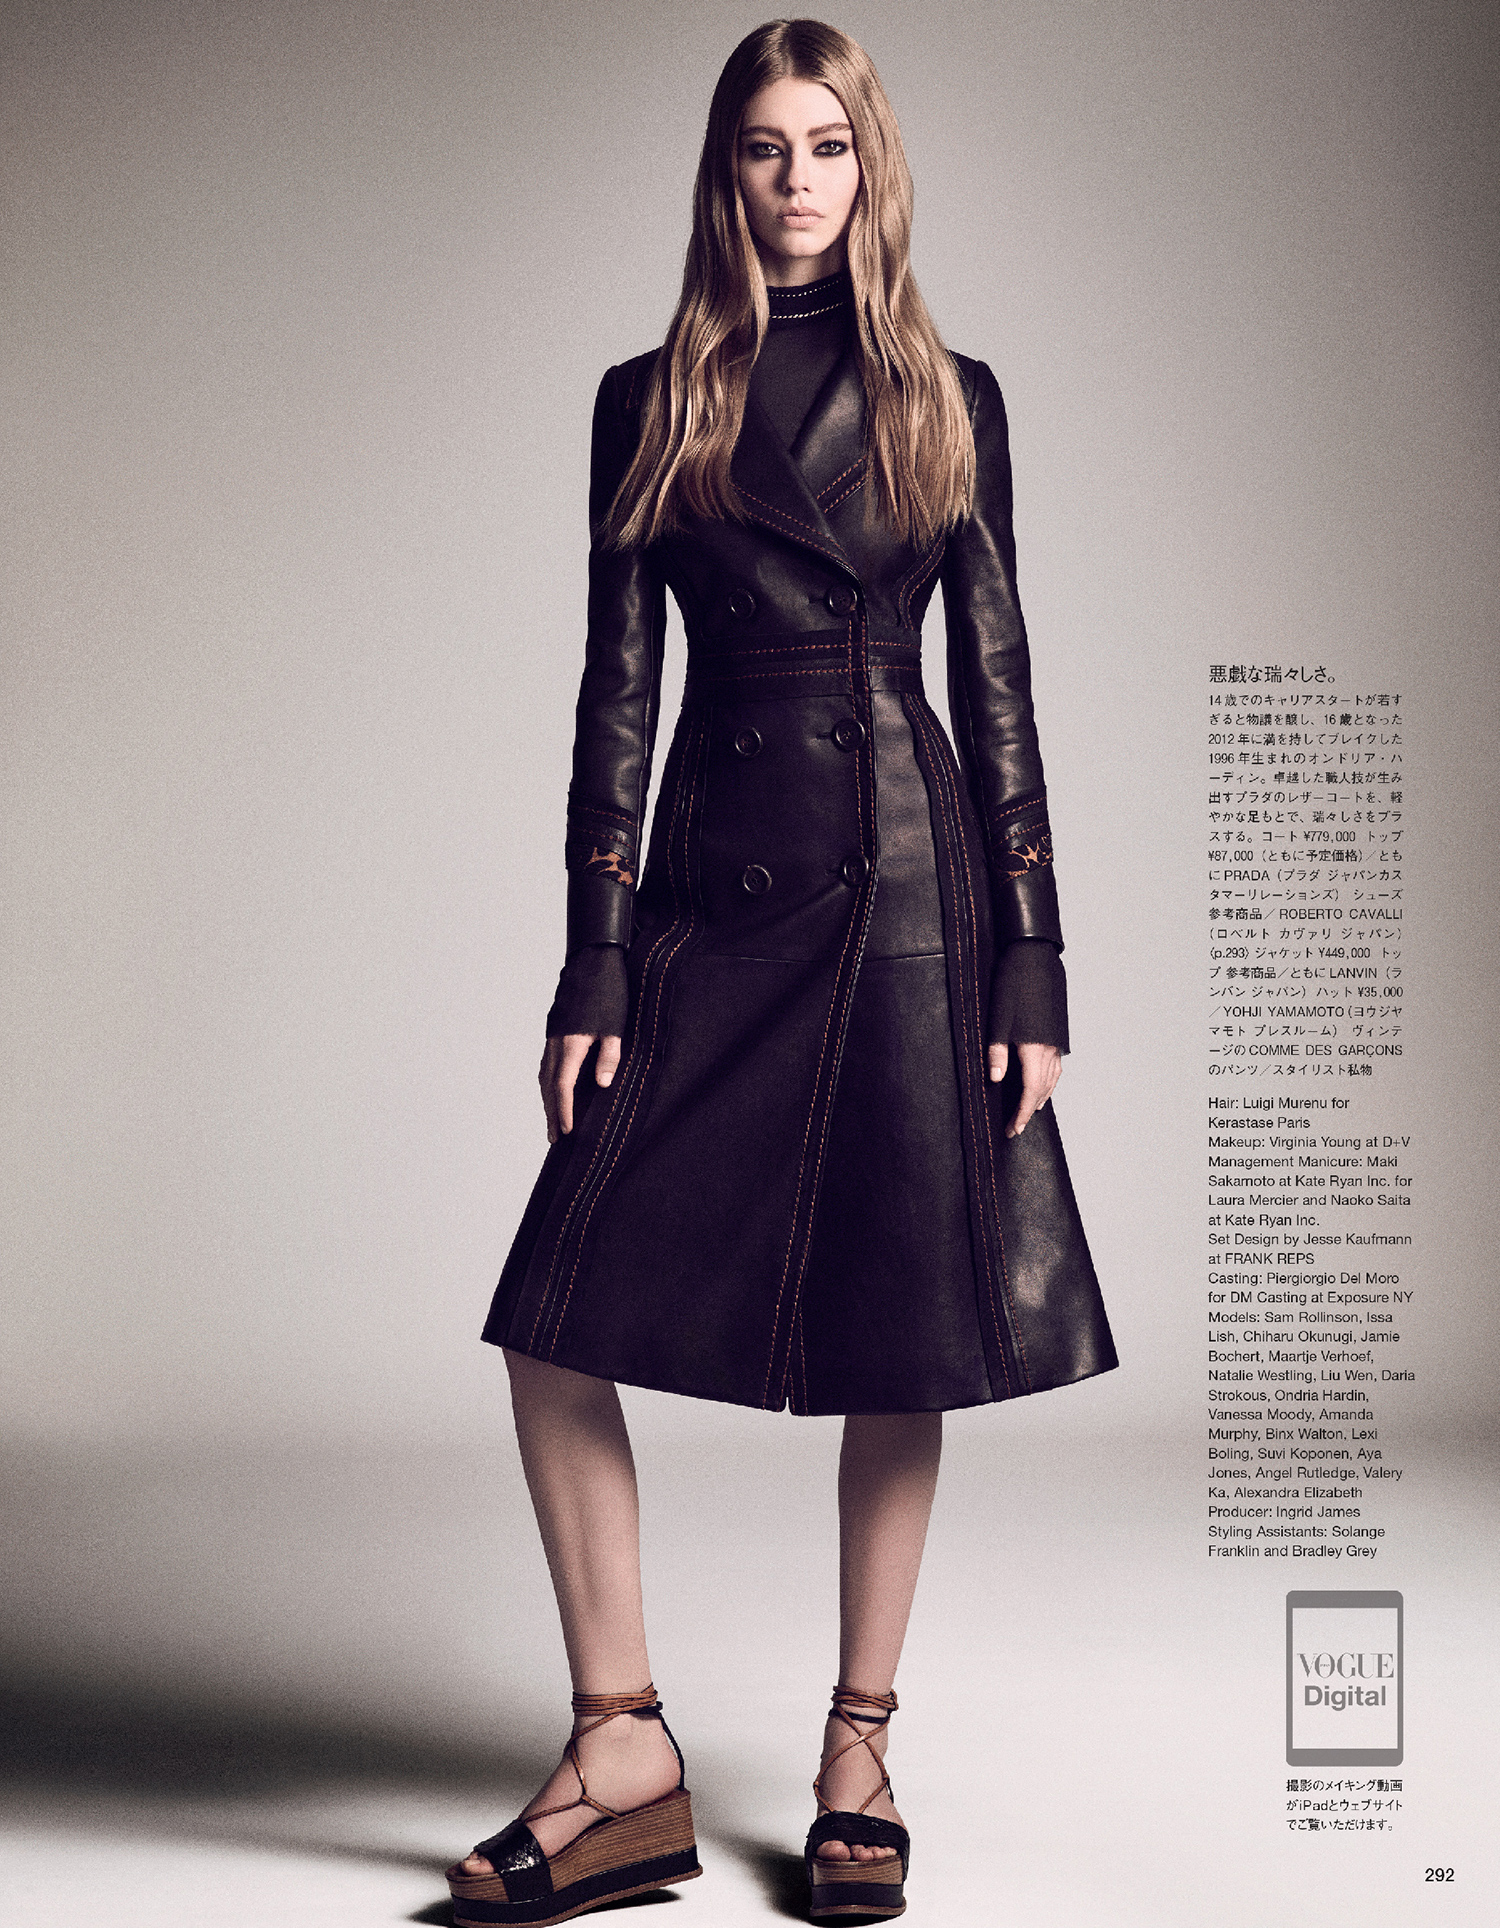 Giovanna-Battaglia-Vogue-Japan-March-2015-Digital-Generation-3.jpg